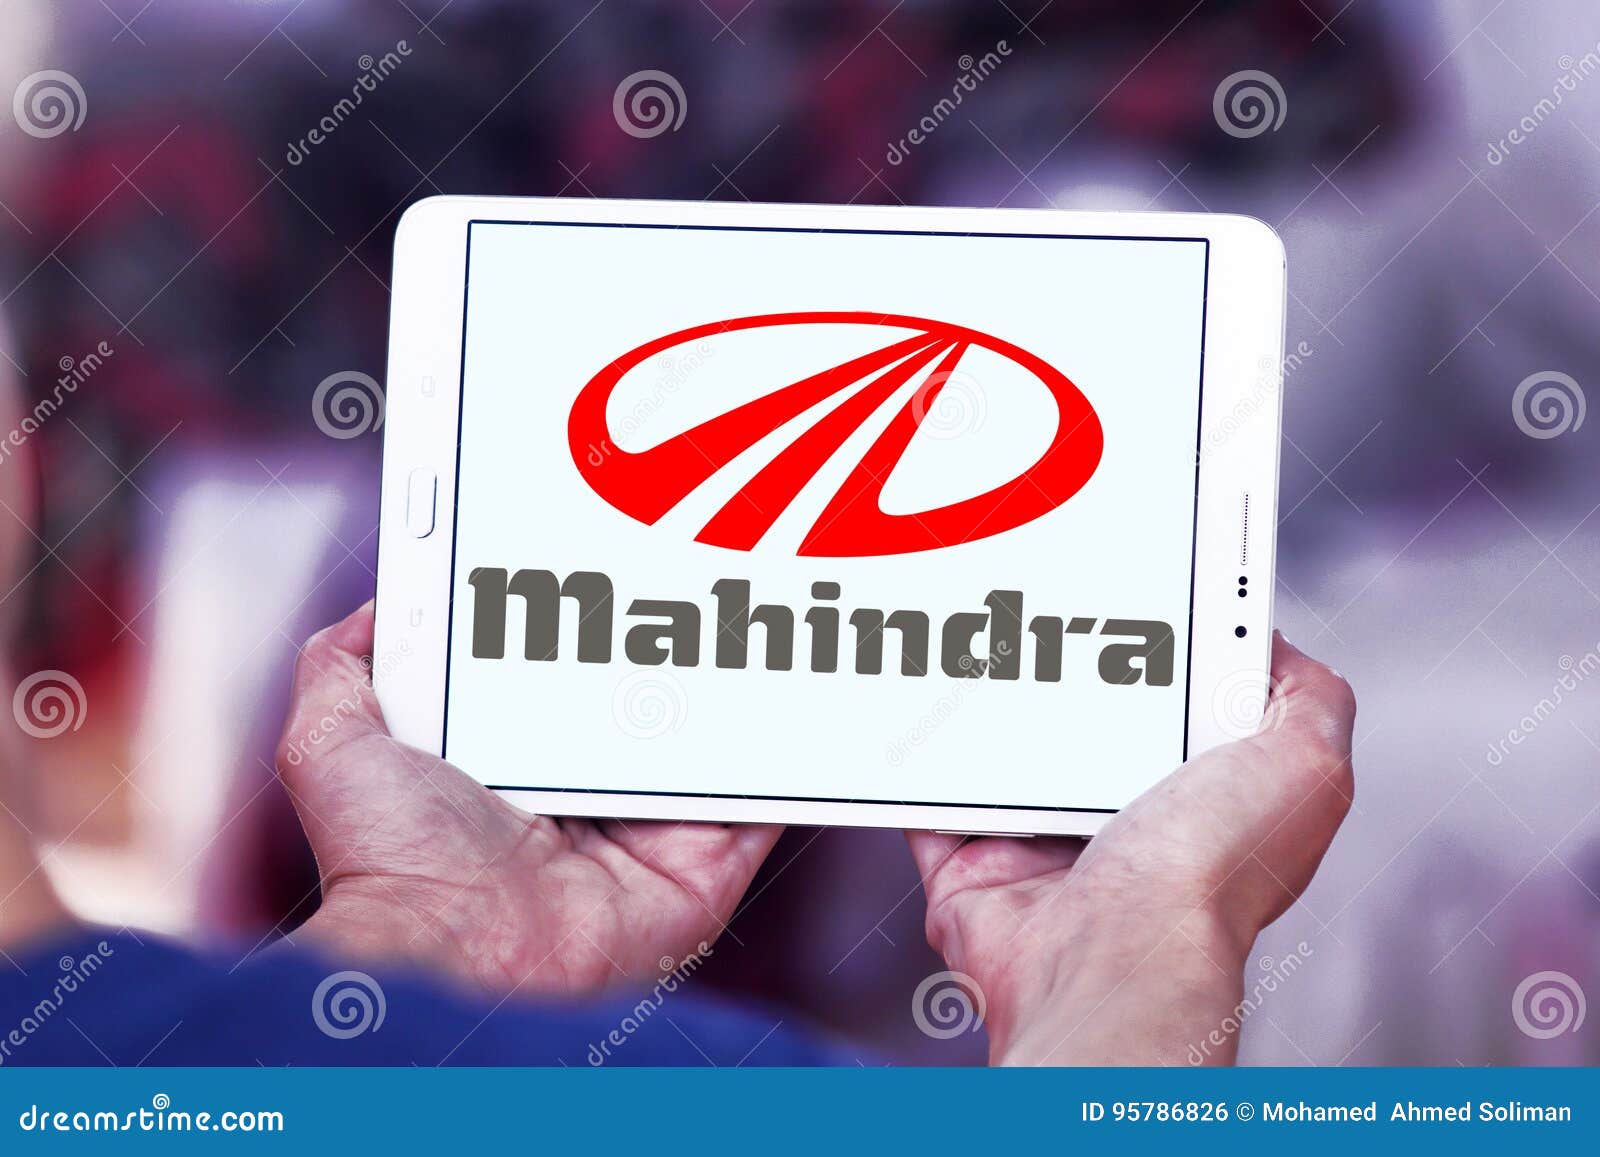 Mahindra Logo Wallpapers - Wallpaper Cave